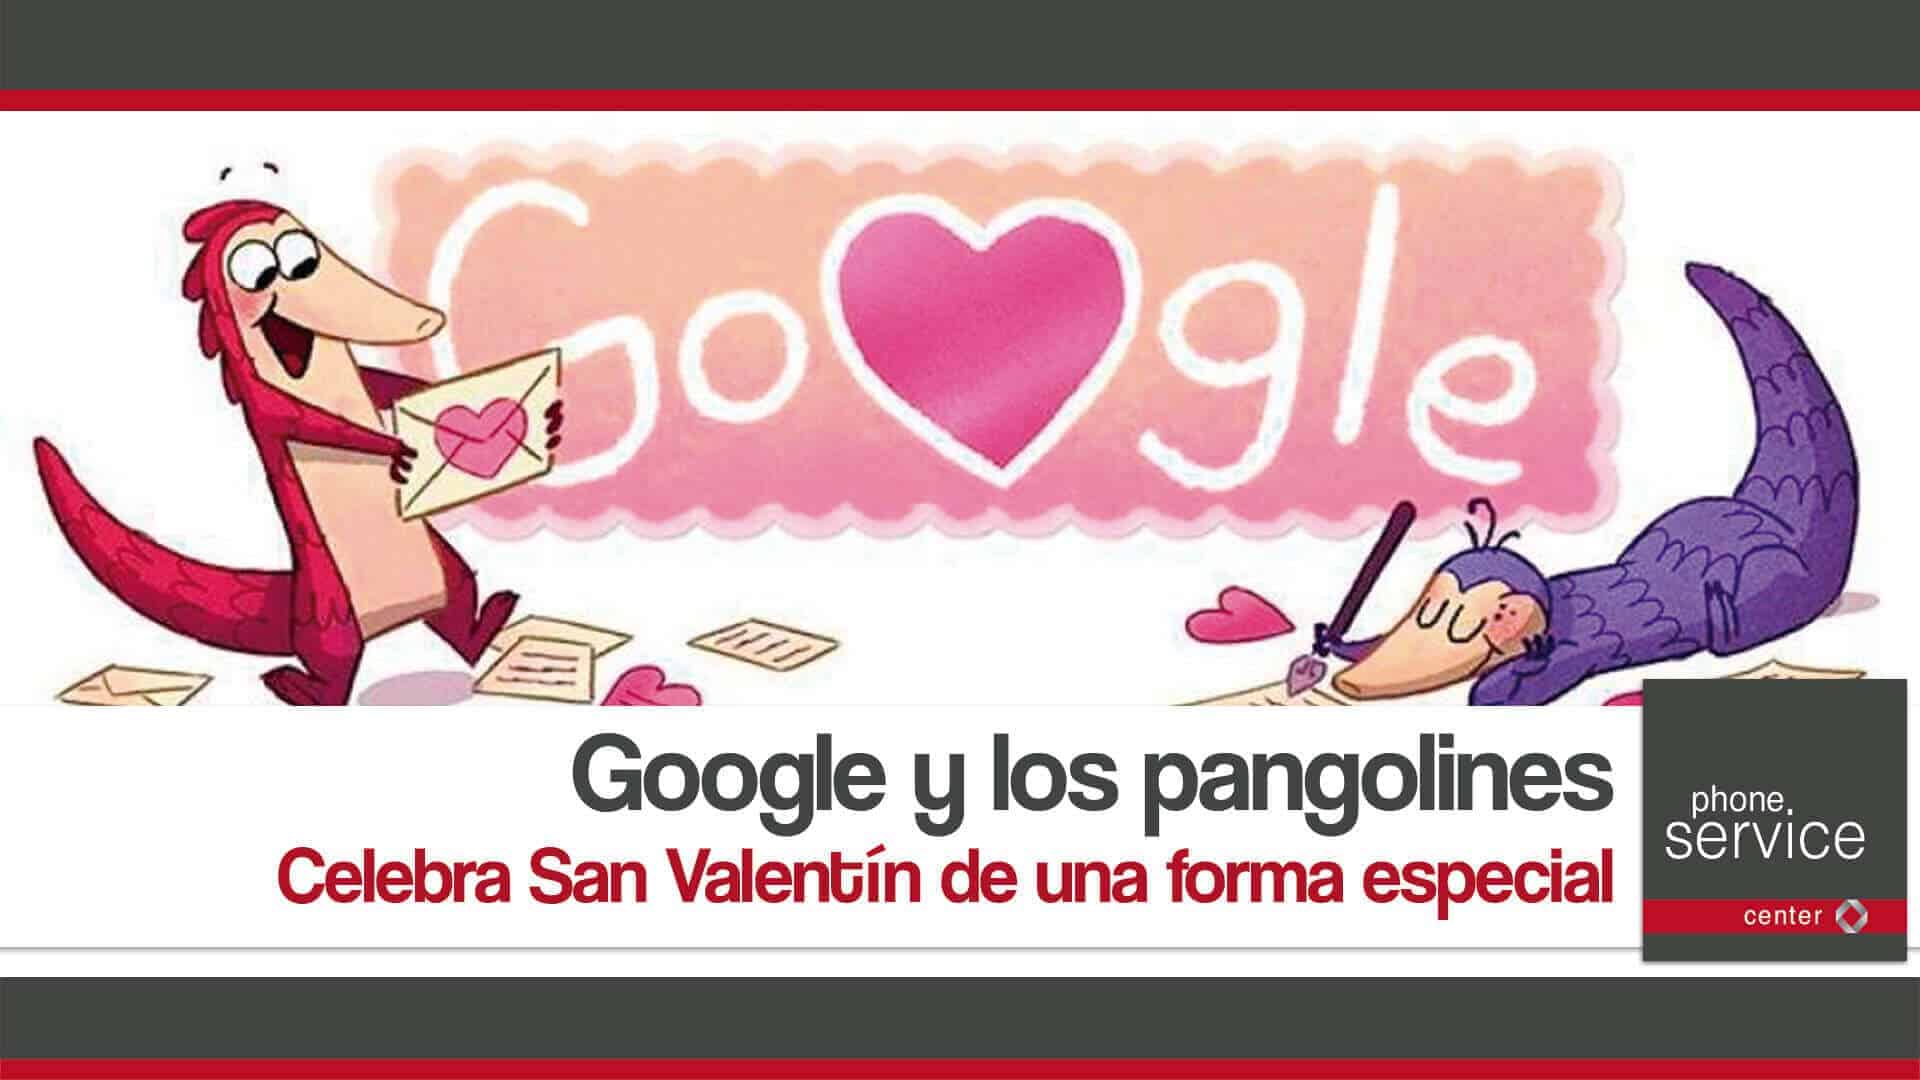 San Valentin con Google y los pangolines